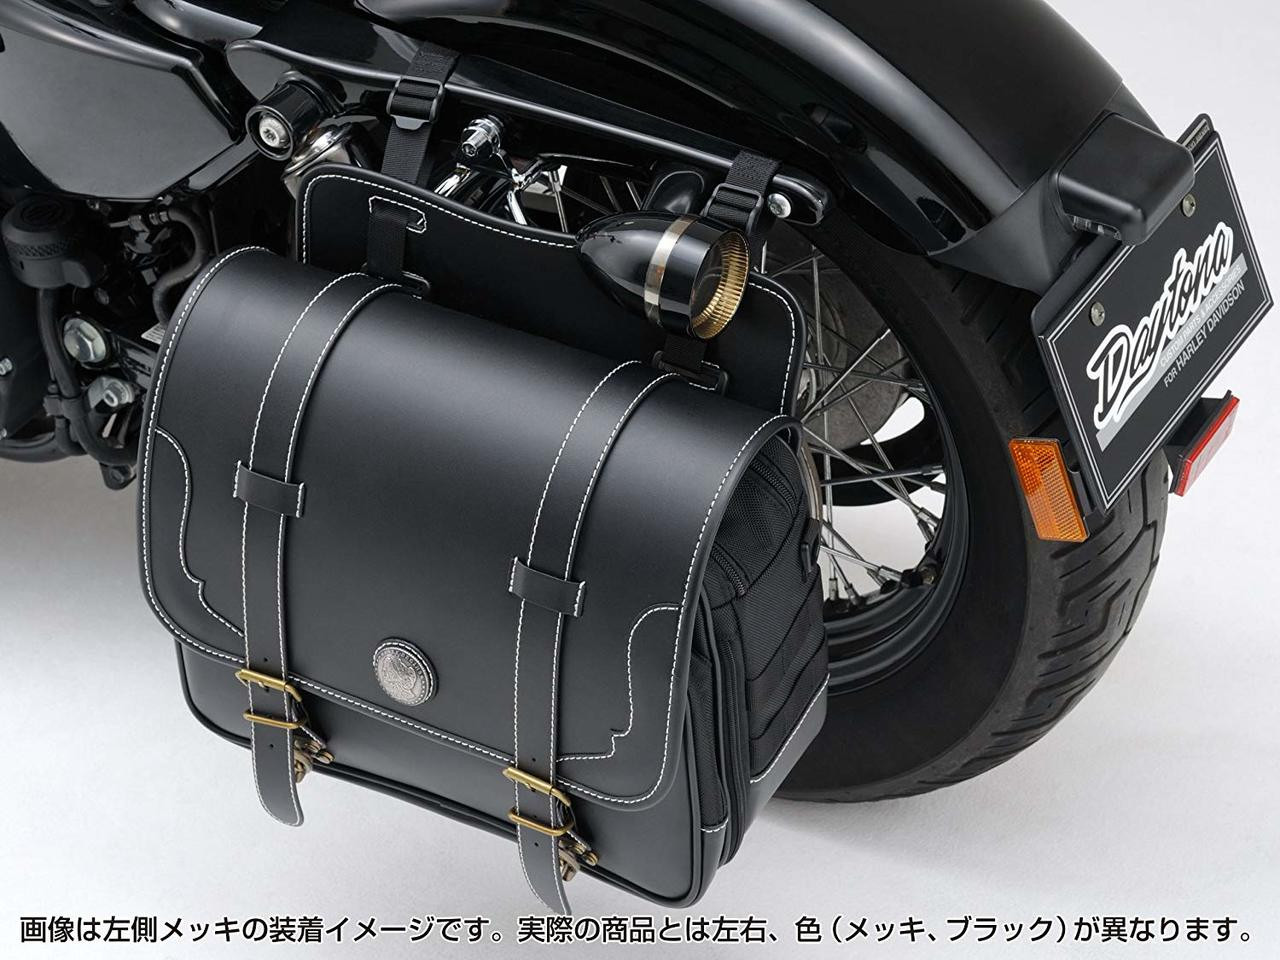 Saddle Bag Support Holder, Chrome, Harley Davidson Sportster XL1200C